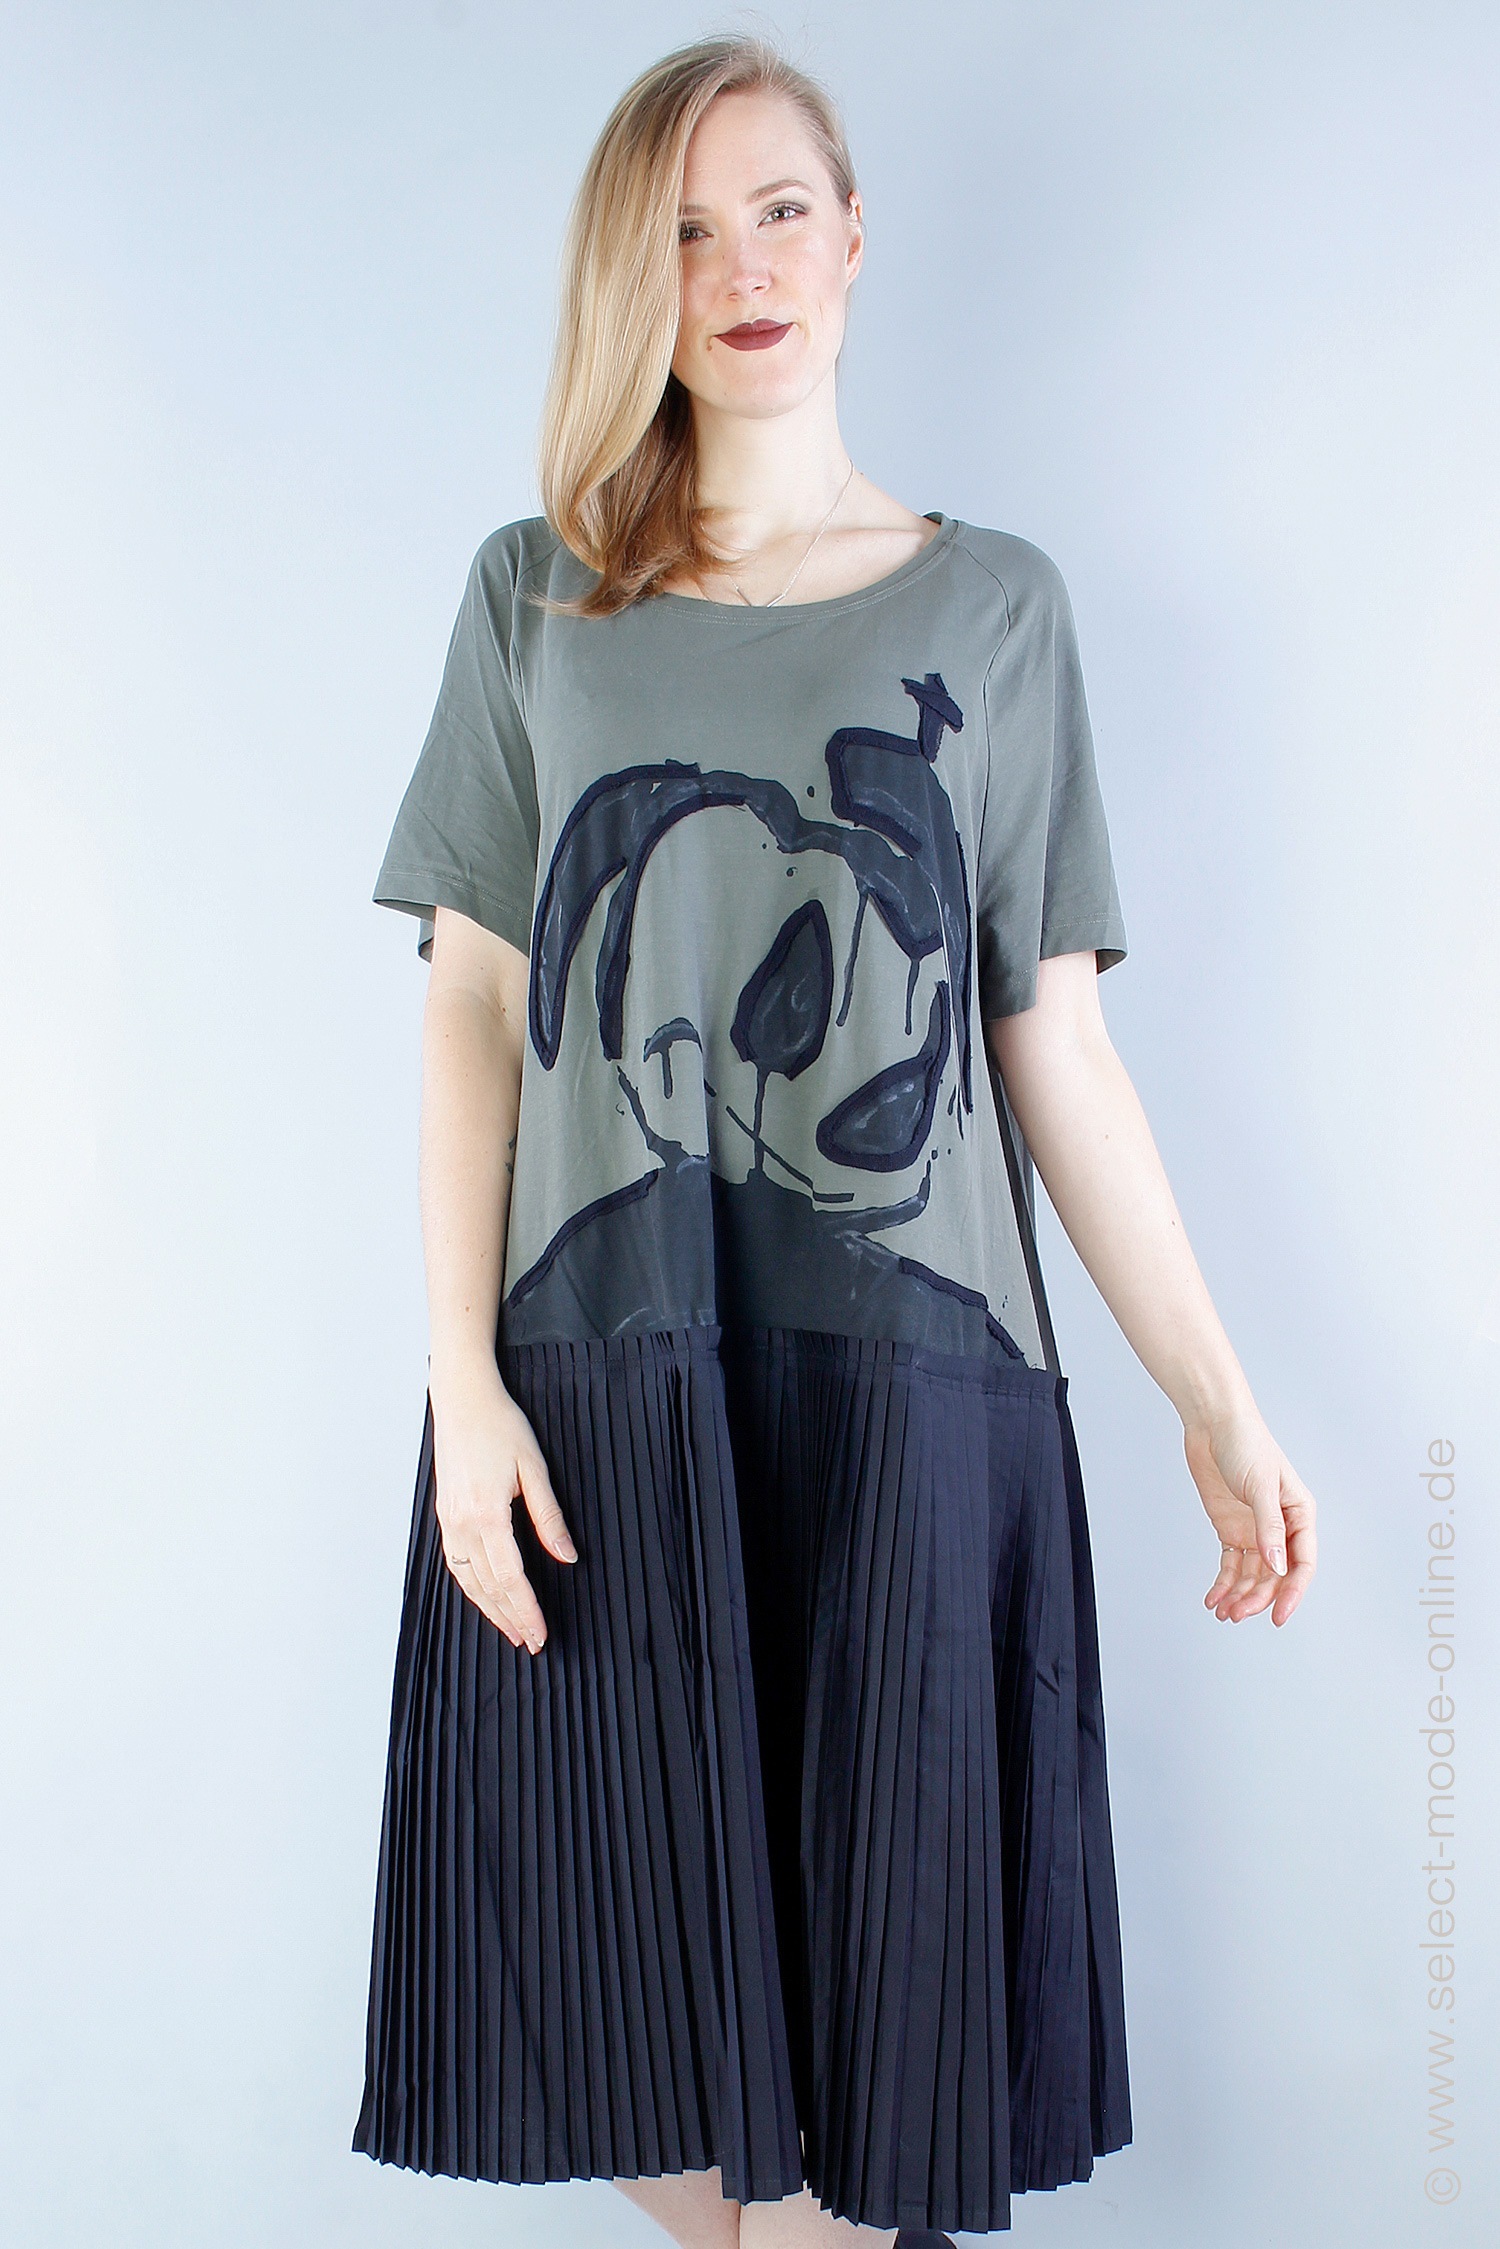 Detailreiches Kleid - alge print - 1231560904